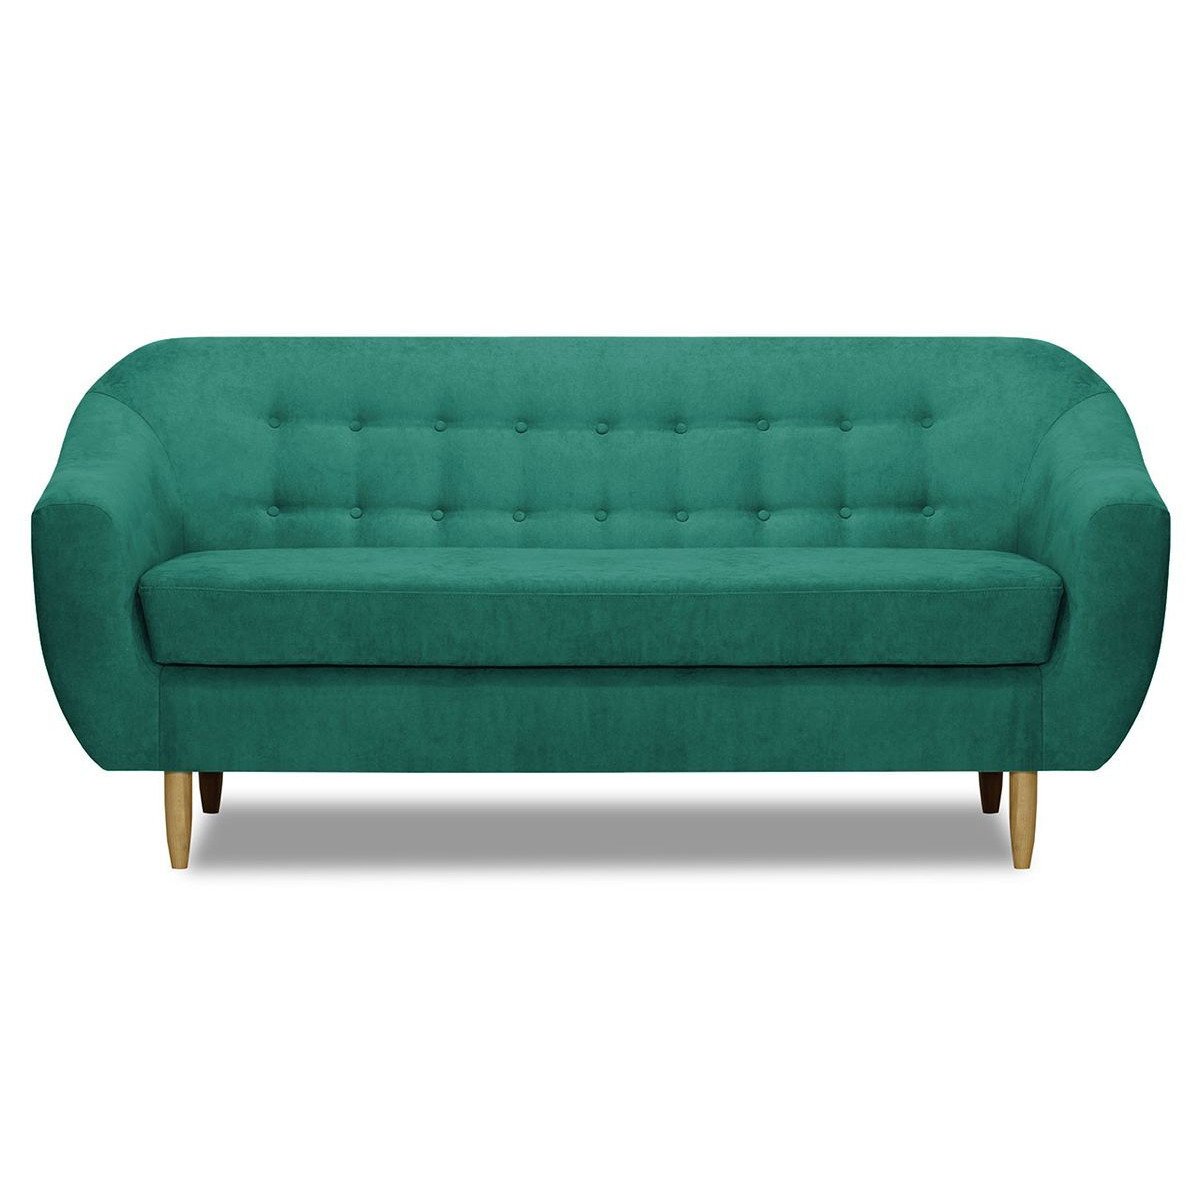 Bont 3 Seater Sofa, turquoise - image 1